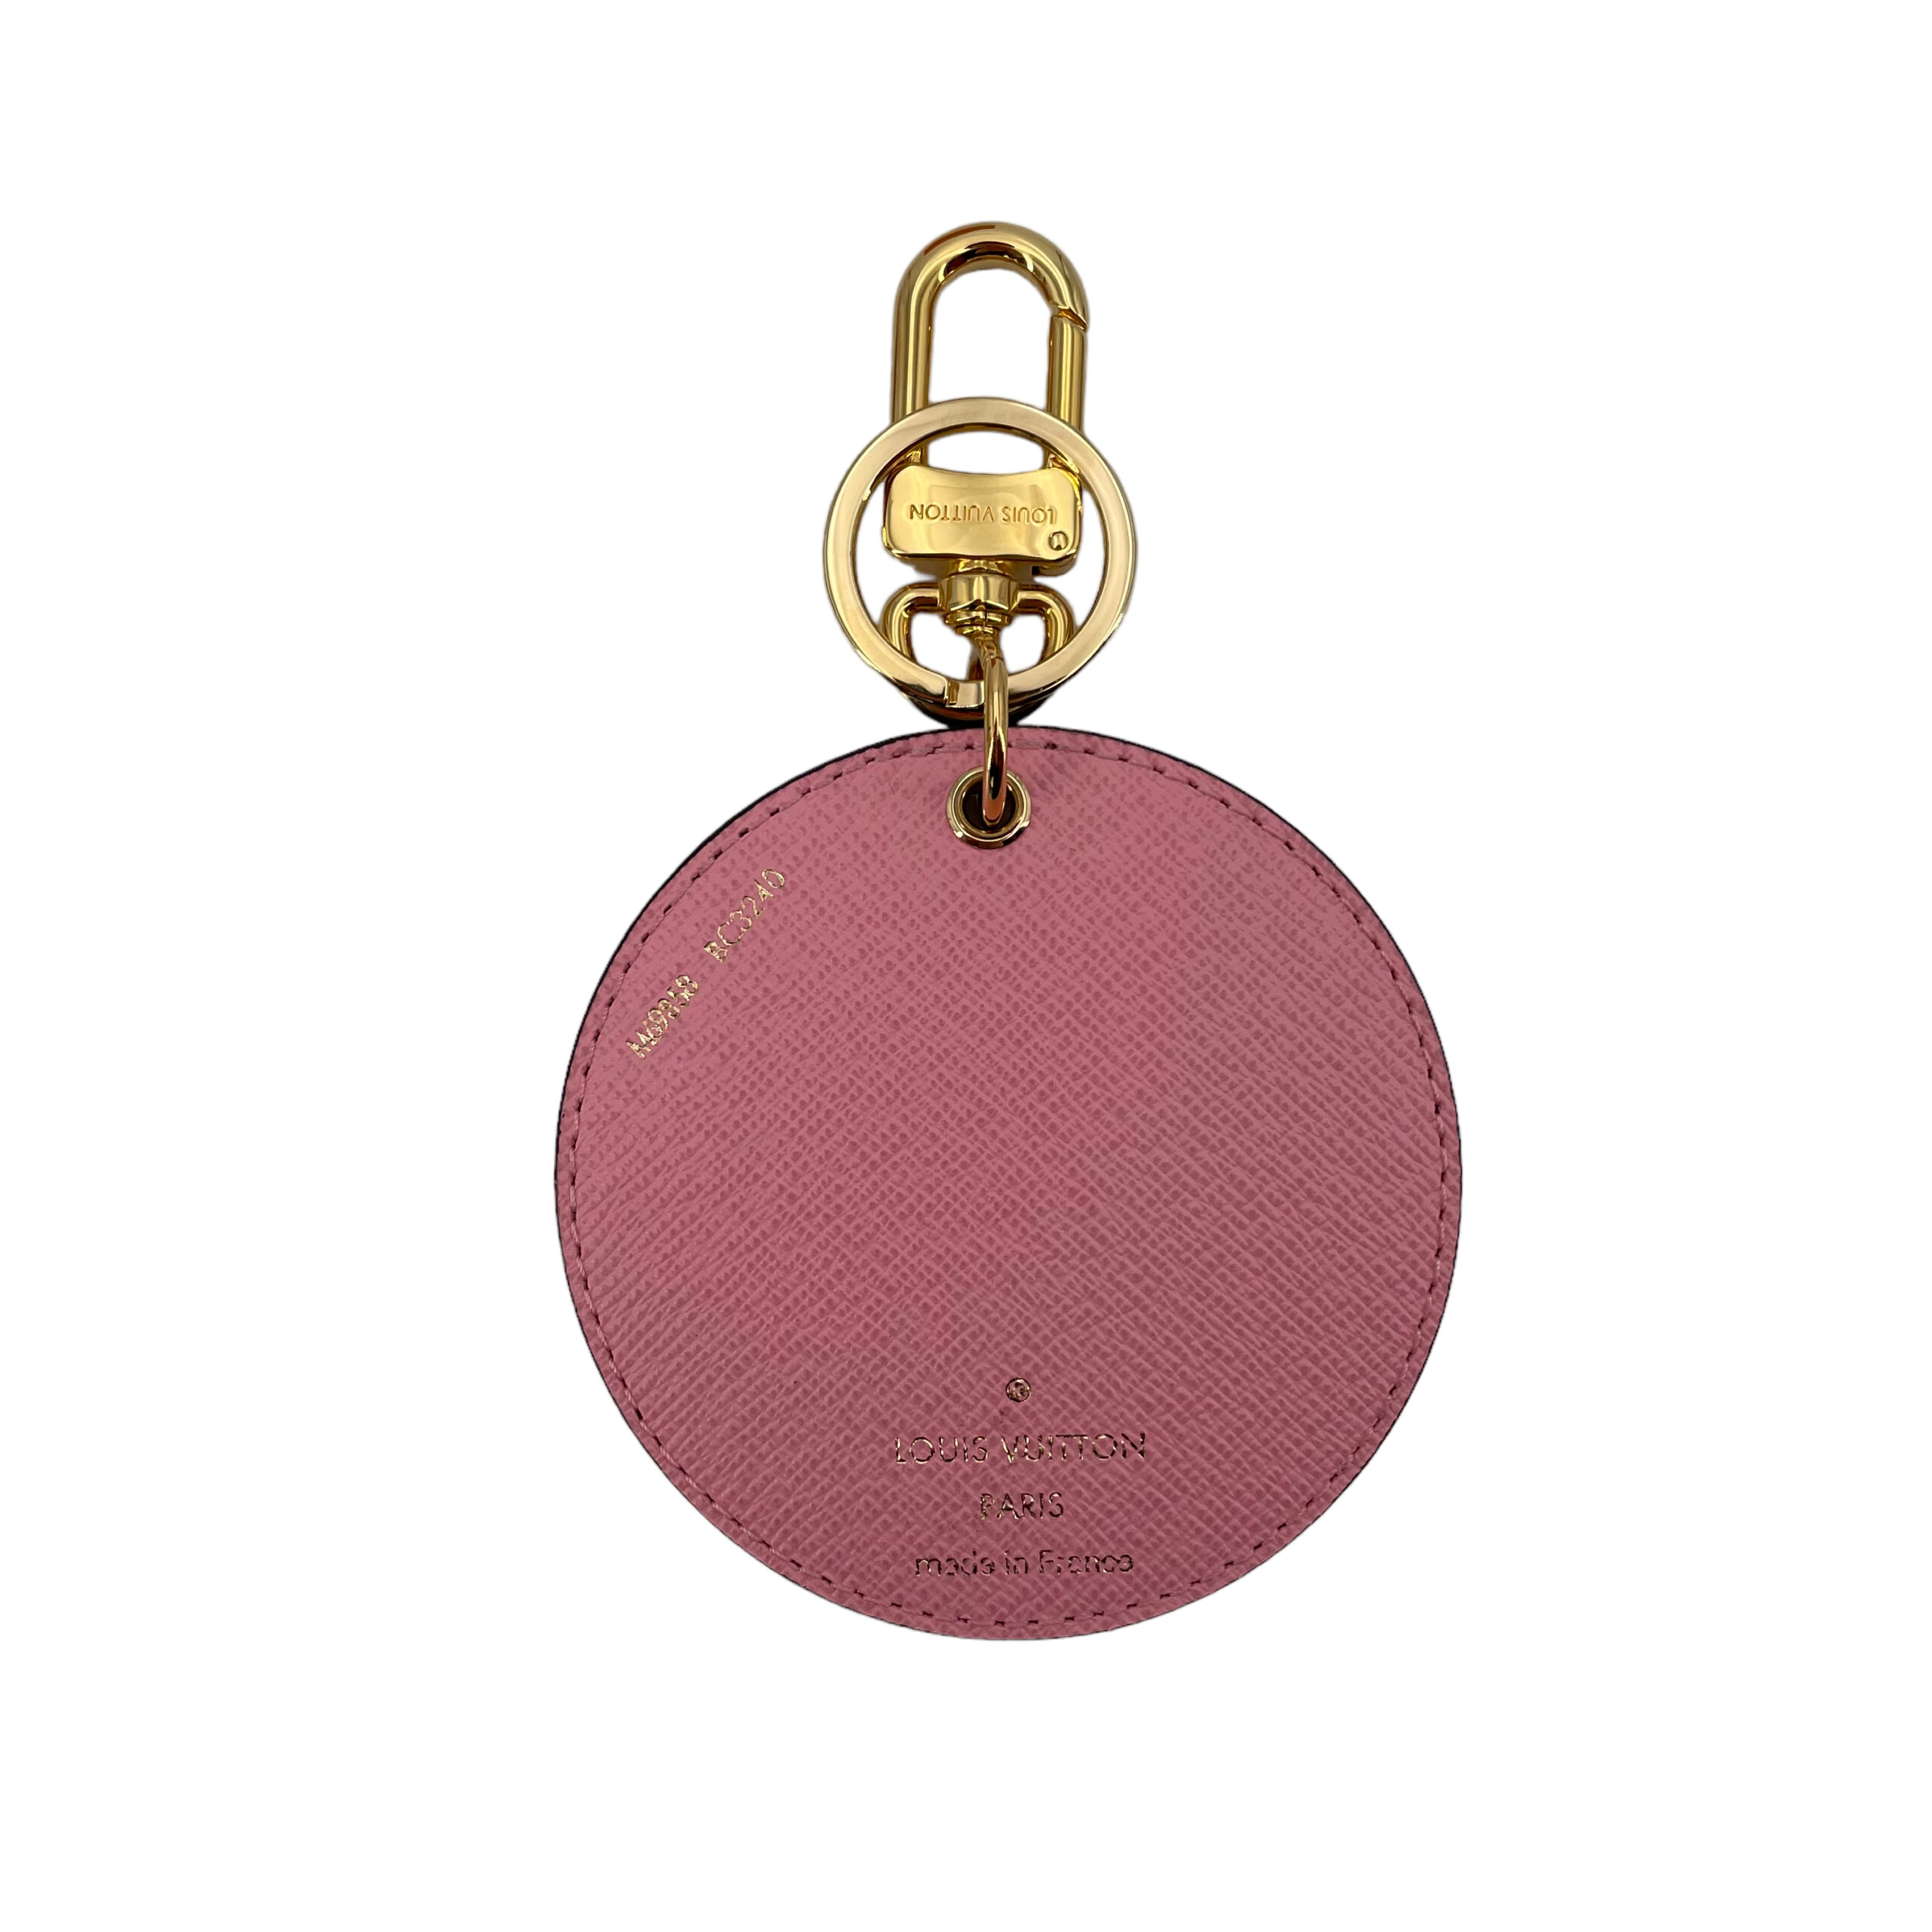 Louis Vuitton Illustre Vivienne Funfair Xmas Bag Charm and Key